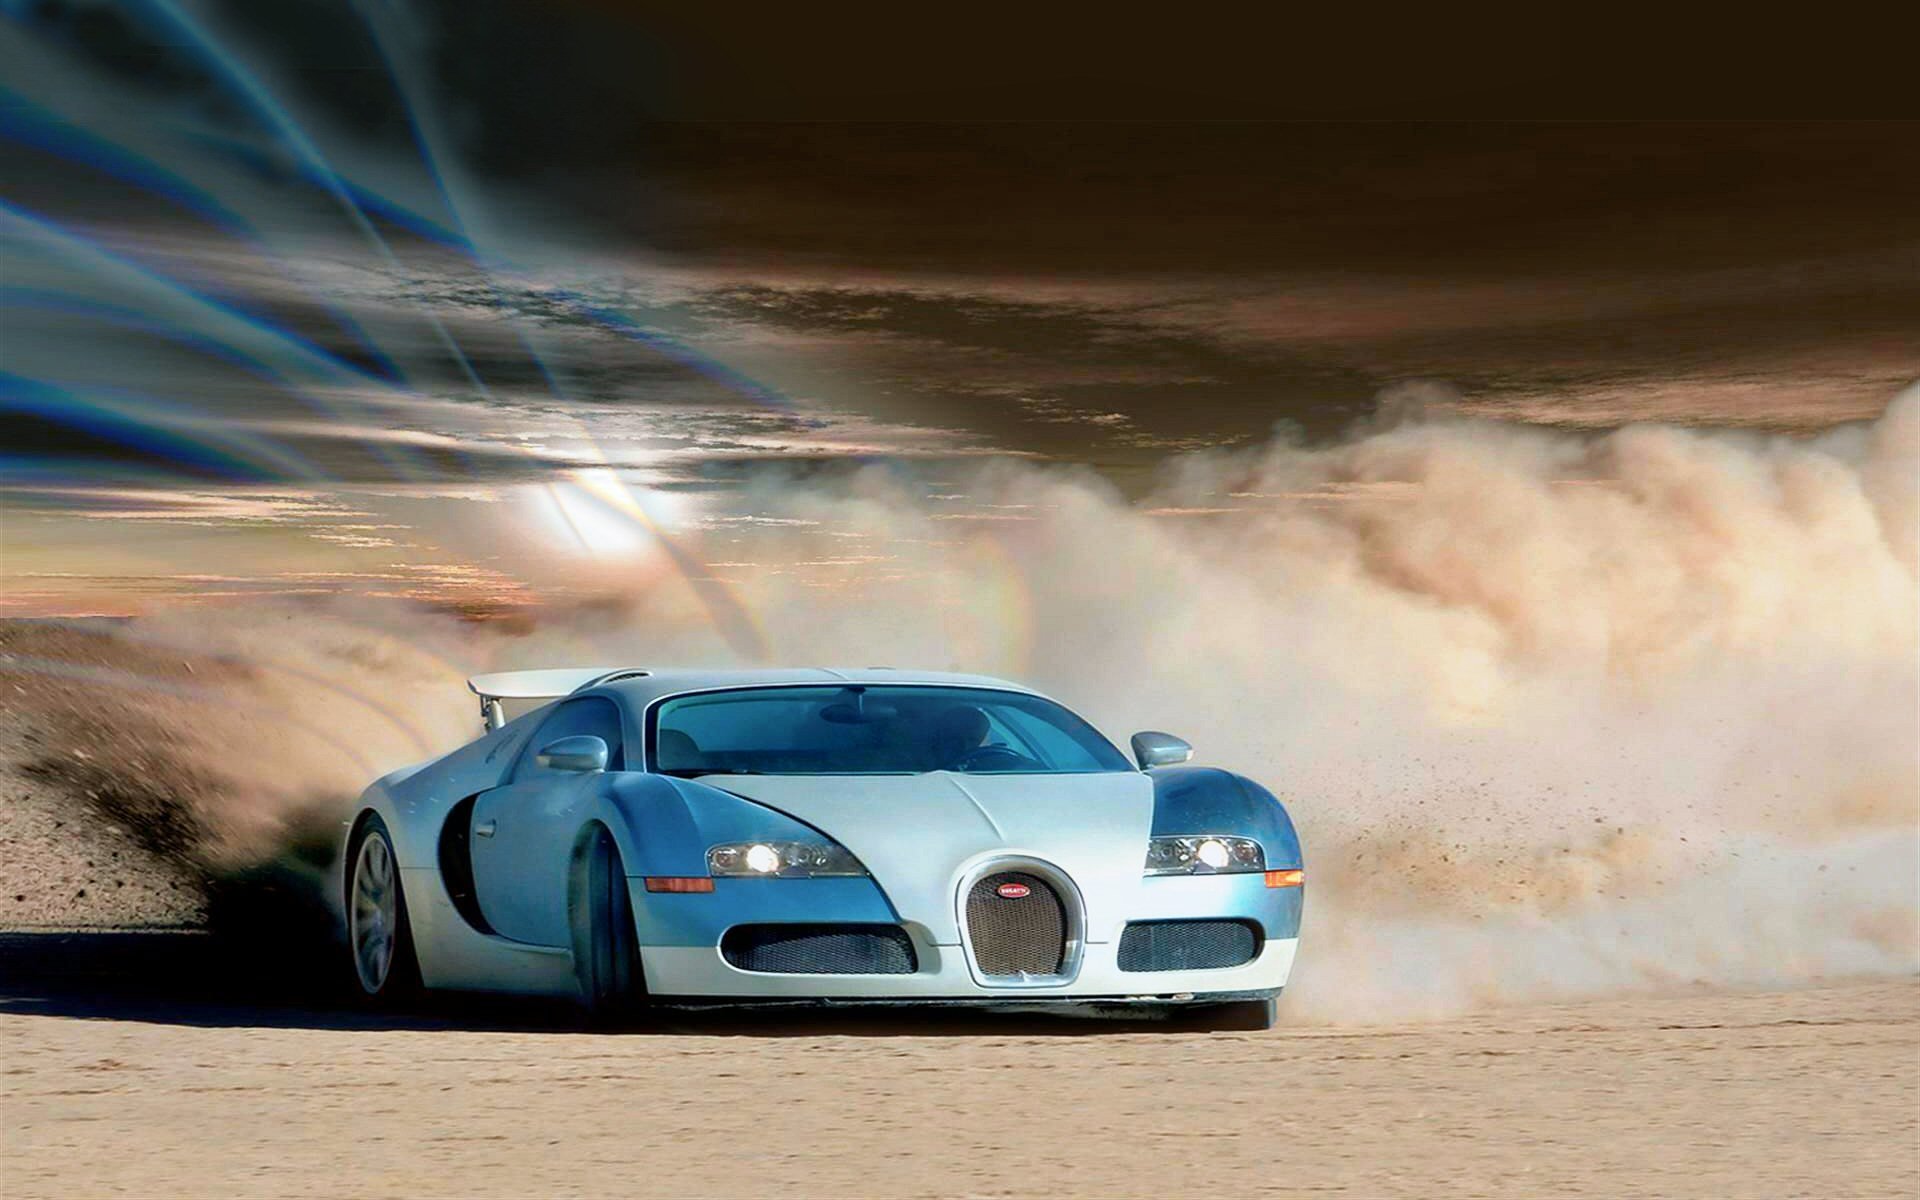 Hd Wallpaper Of Bugatti Car - HD Wallpaper 